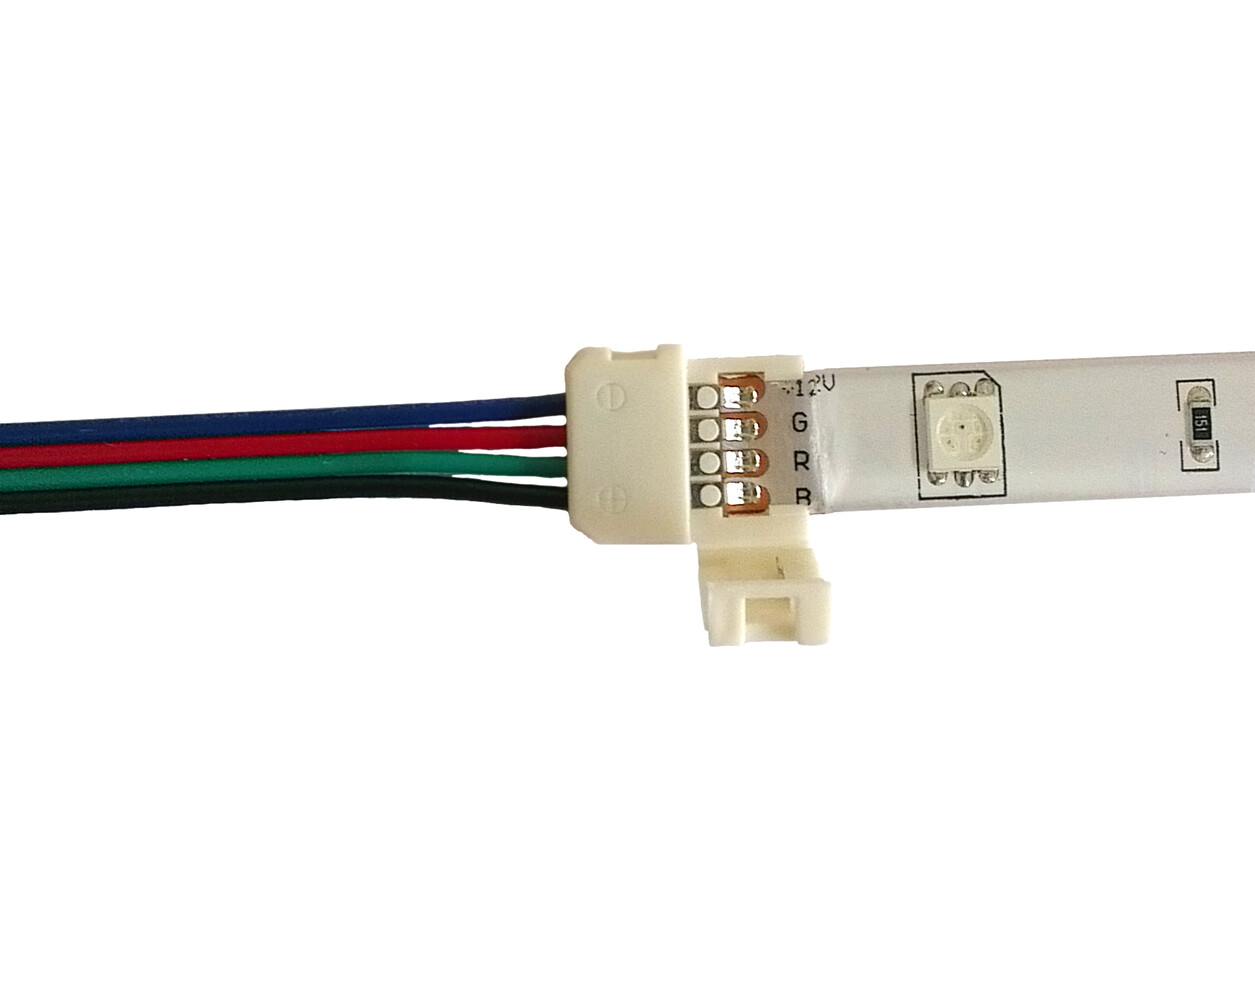 LED Universum LED Streifen Kabel 30cm 4 pol Schnellverbinder Klippbefestigung